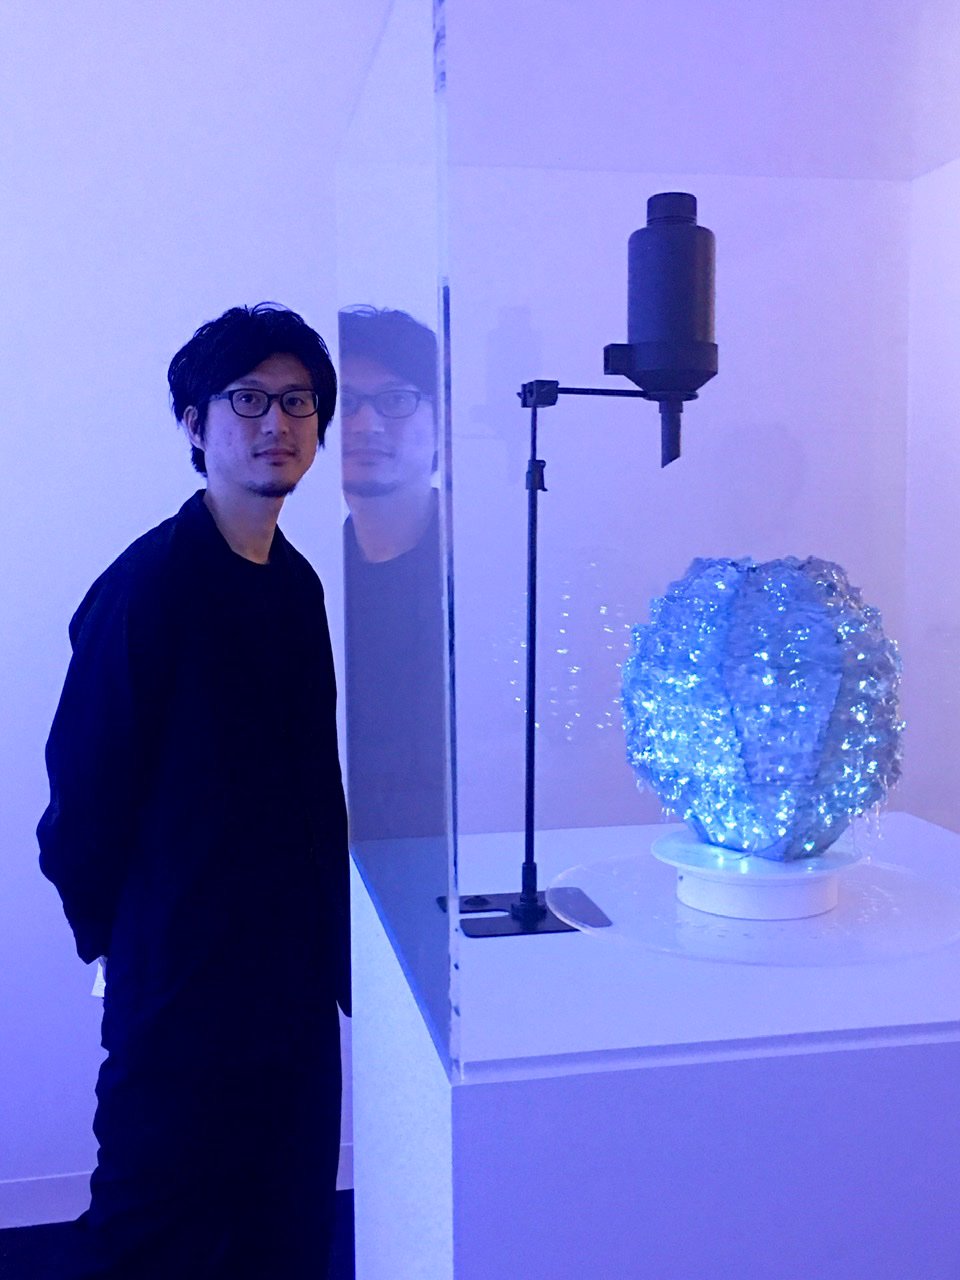 タクトプロジェクトの作品「glow ⇄ grow : pottery」と代表の吉泉聡。 2019年12月、注目を集めたデザイン・マイアミでの展示の様子。Image by Ryuko Kida